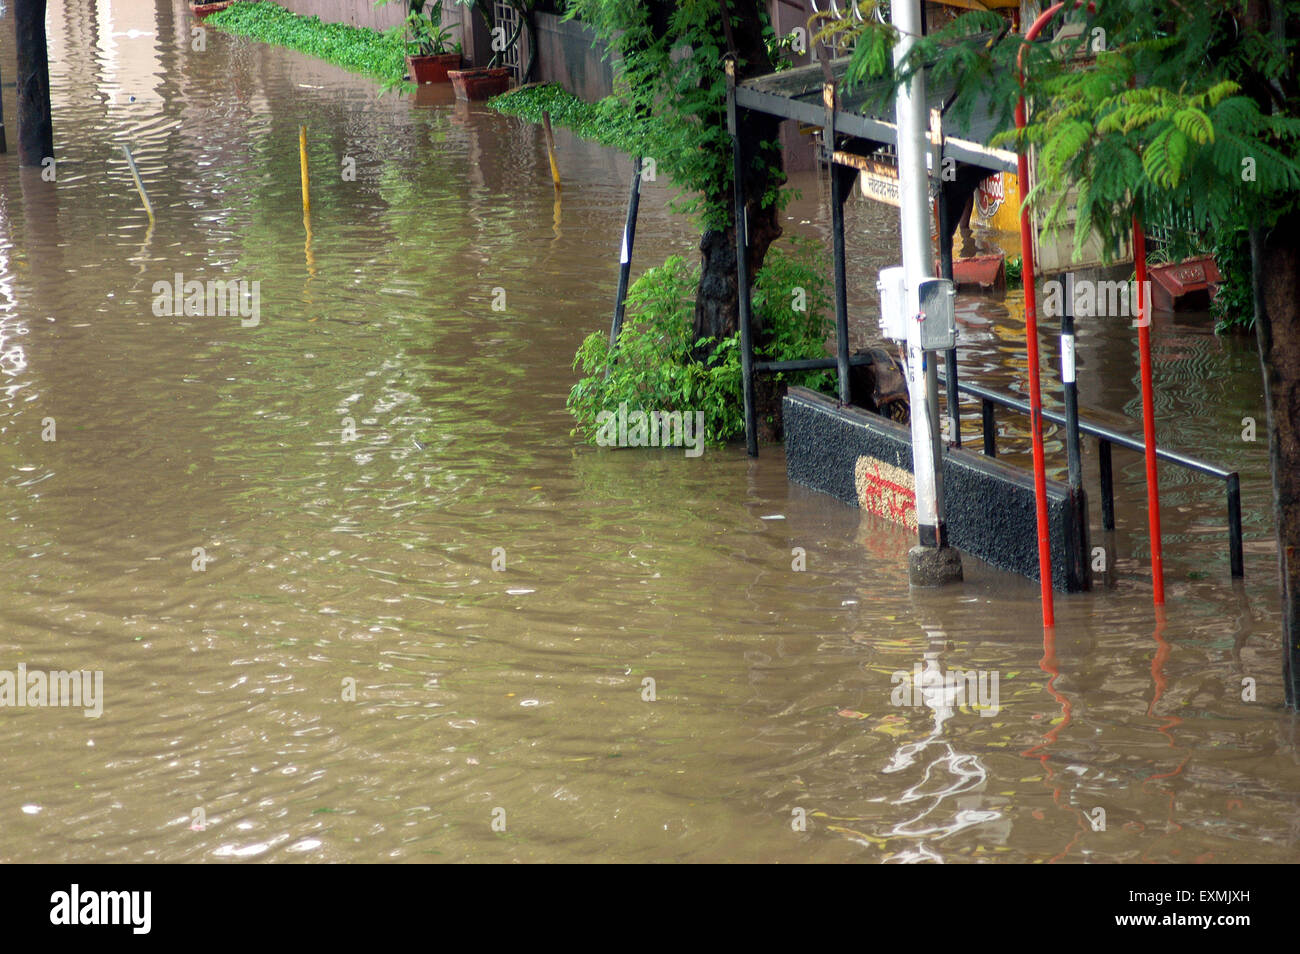 Alluvioni piovose monsoniche, MIGLIOR fermata di autobus sommerso allagato strada, Bombay, Mumbai, Maharashtra, India, Asia Foto Stock